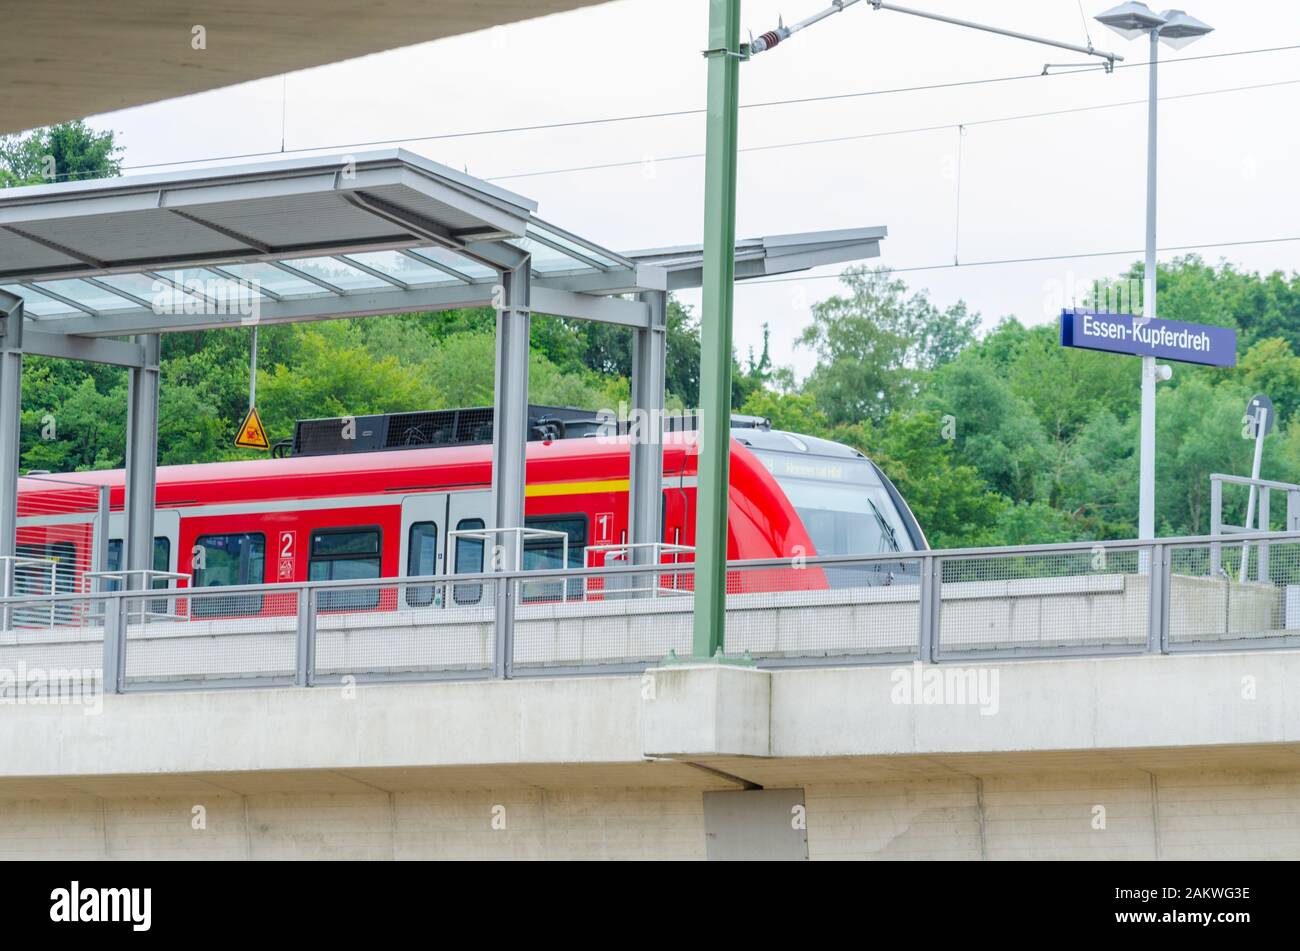 Essen Kupferdreh, Nrw, Allemagne - 27, 2014: Gare S-Bahn à Essen Kupferdreh. Après avoir retiré les dégâts causés par la tempête, nous voyons ici le train dans le Banque D'Images